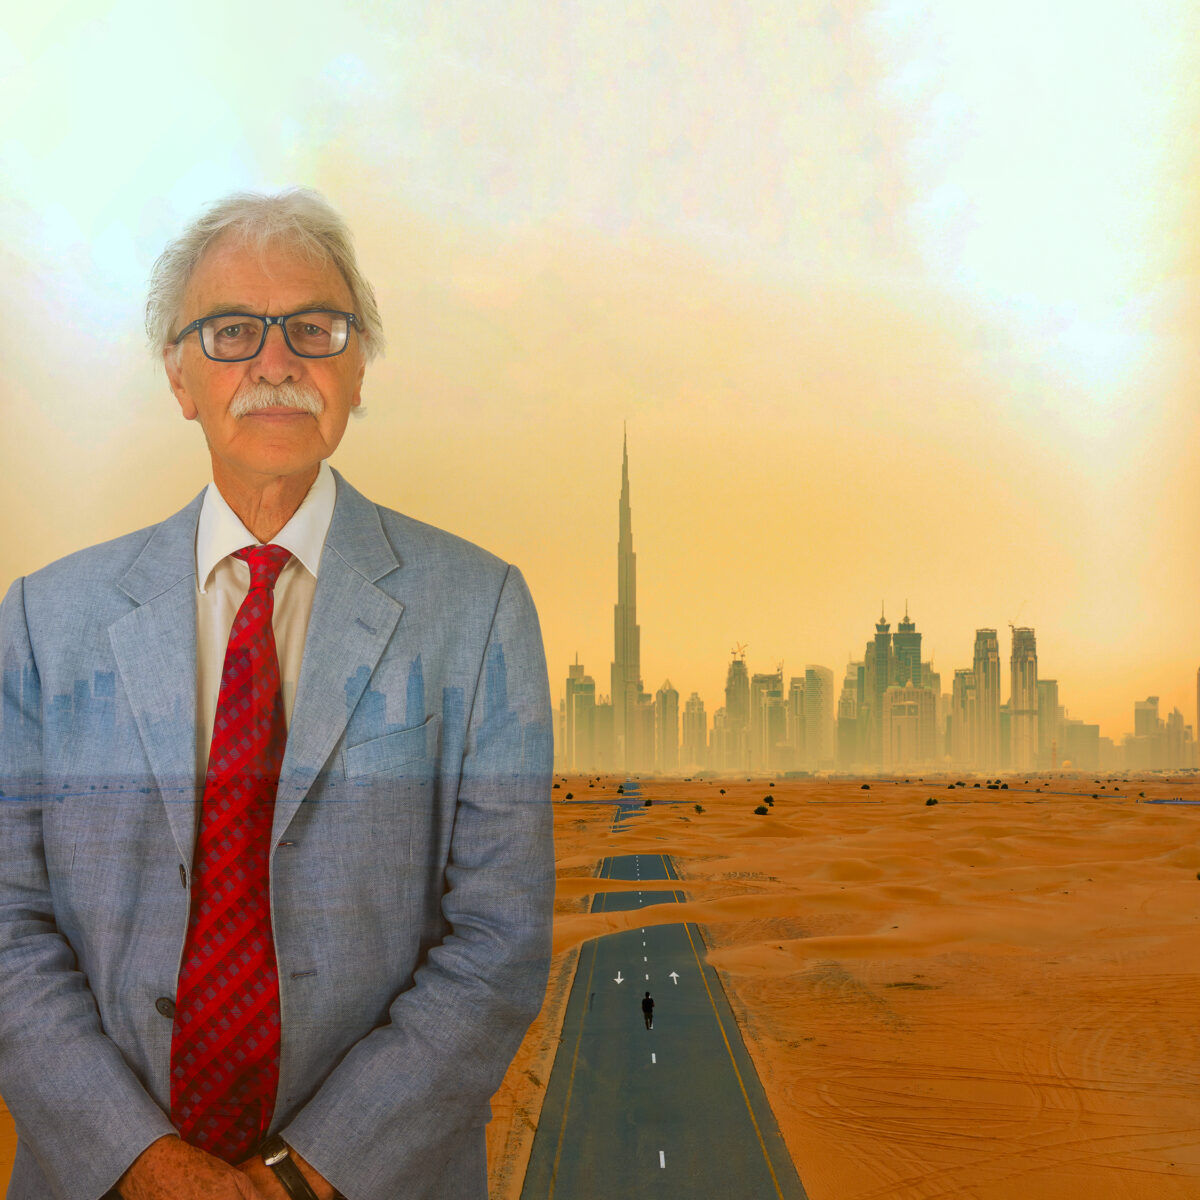 فاز بريان جونسون، مؤسس شركة GAJ Architects، بجائزة المساهمة المتميزة في الهندسة المعمارية في جائزة أفضل المدارس لتصميم تاريخ التعليم في الإمارات باستخدام الضوء.